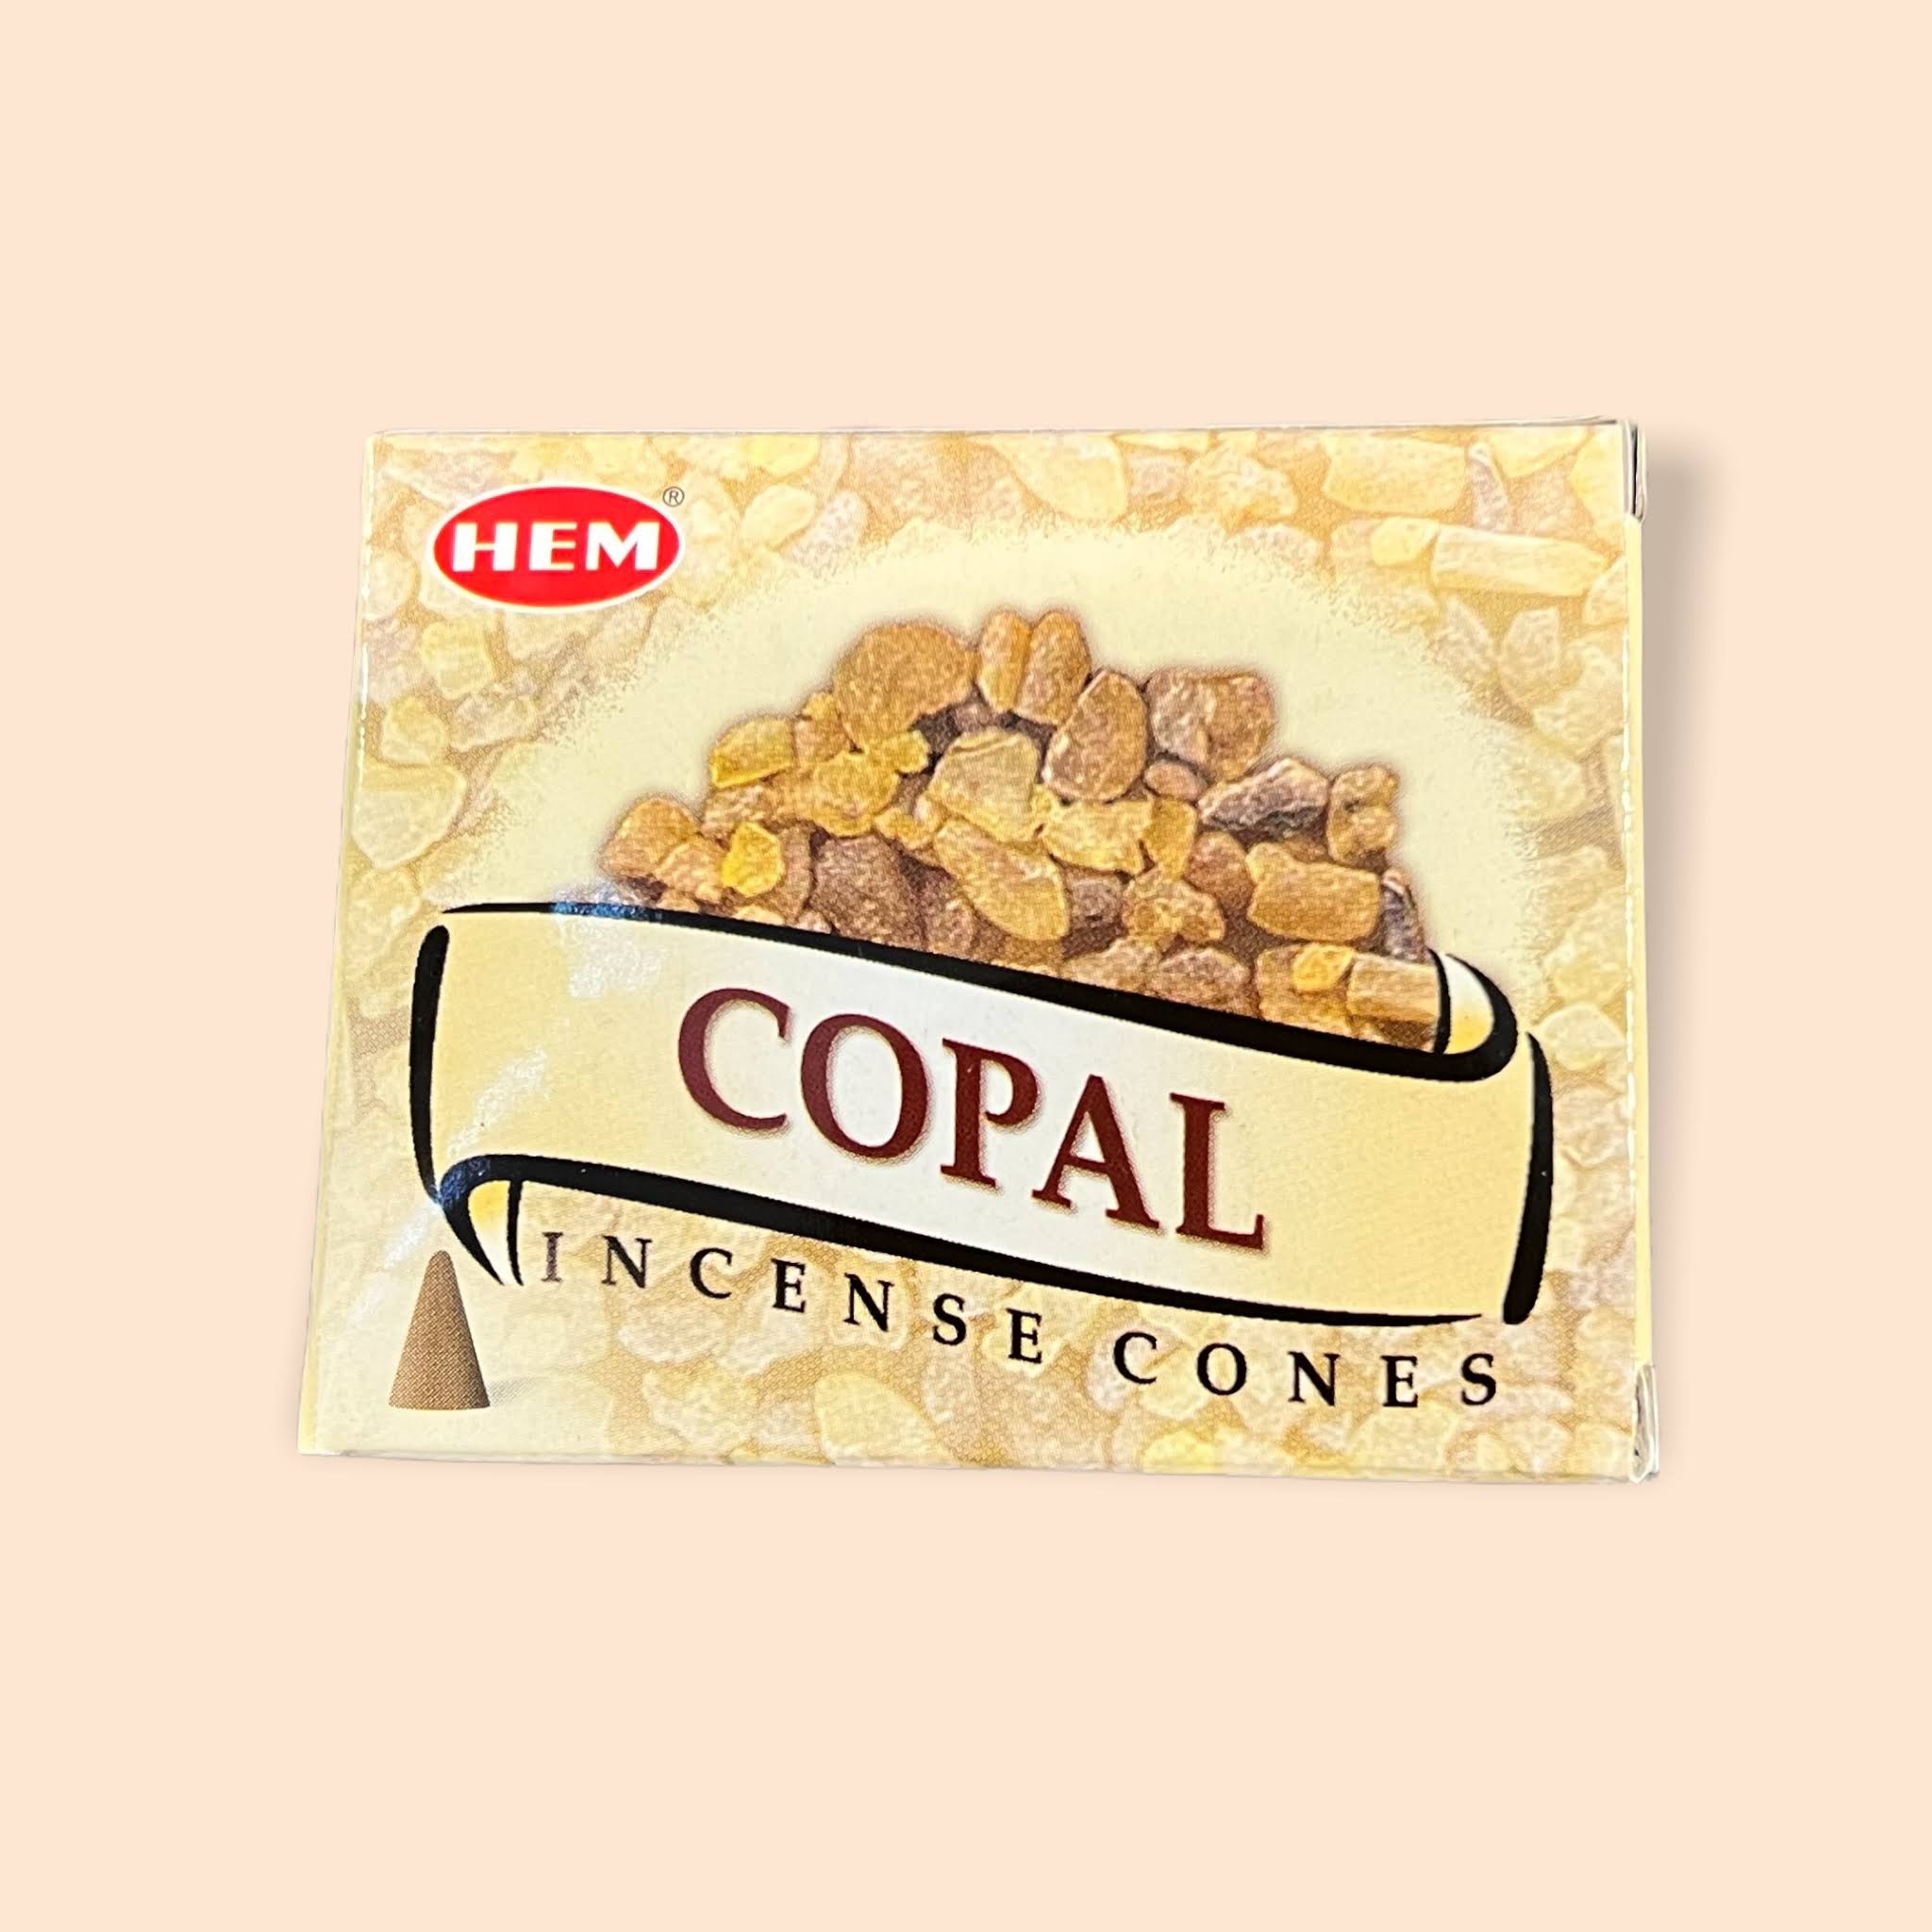 Hem Incense Cones - 10 Count Box Copal